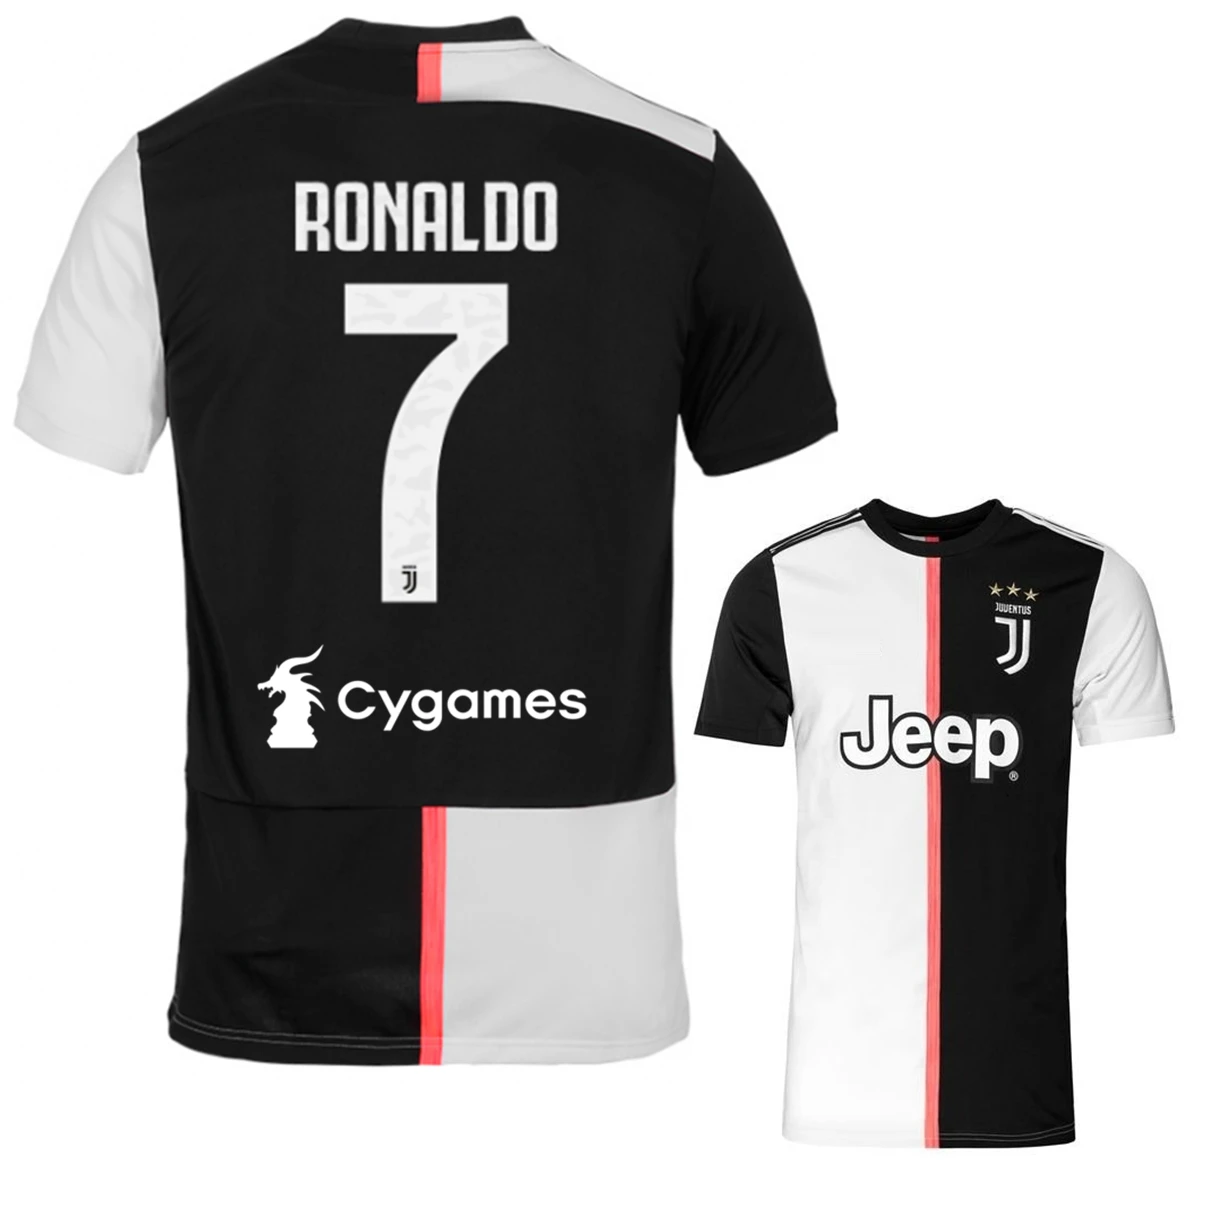 juventus jersey 2019 ronaldo